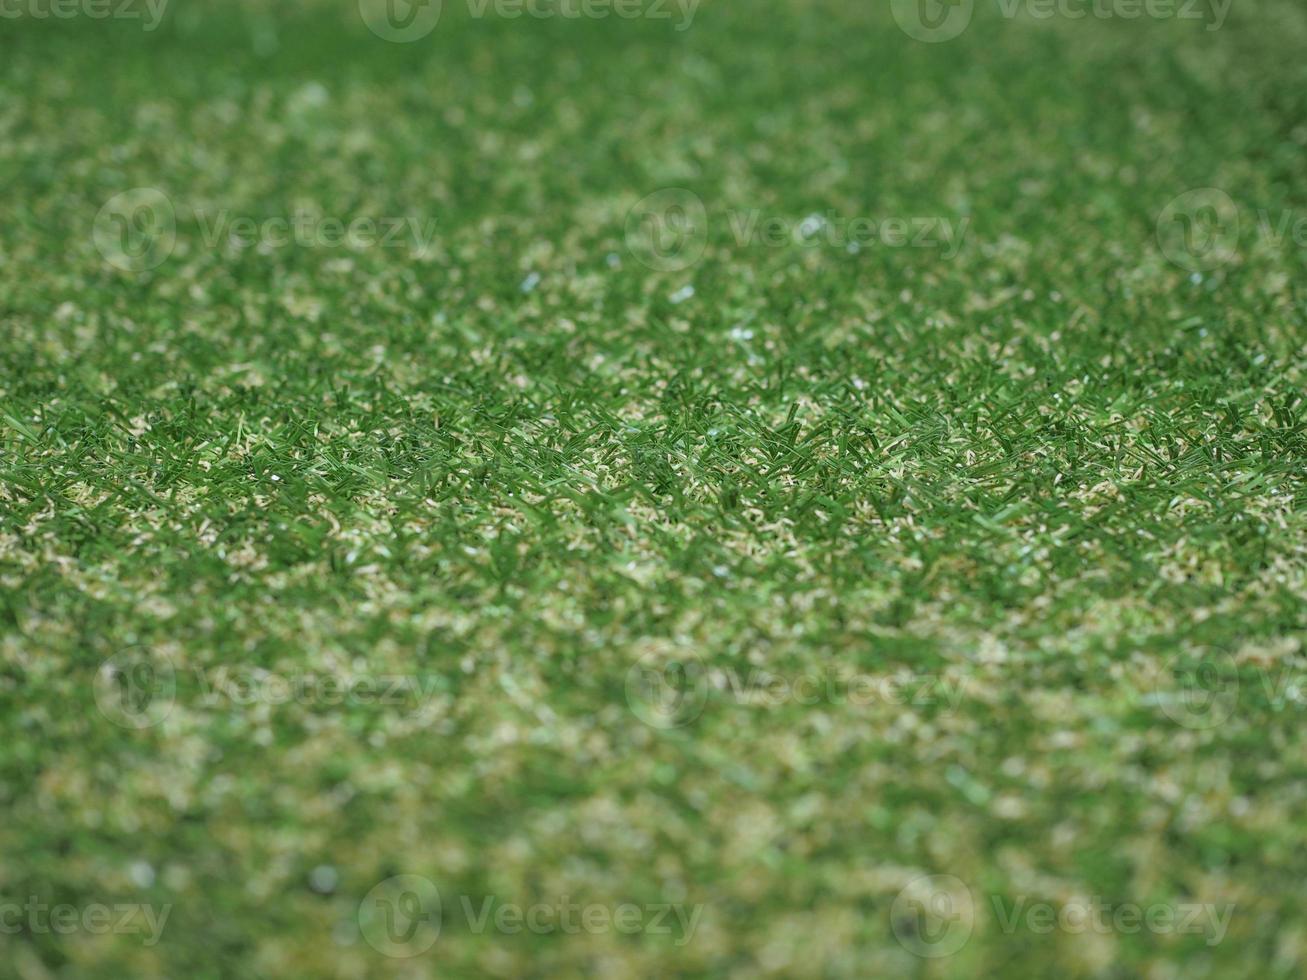 fundo de prado verde artificial de grama sintética foto